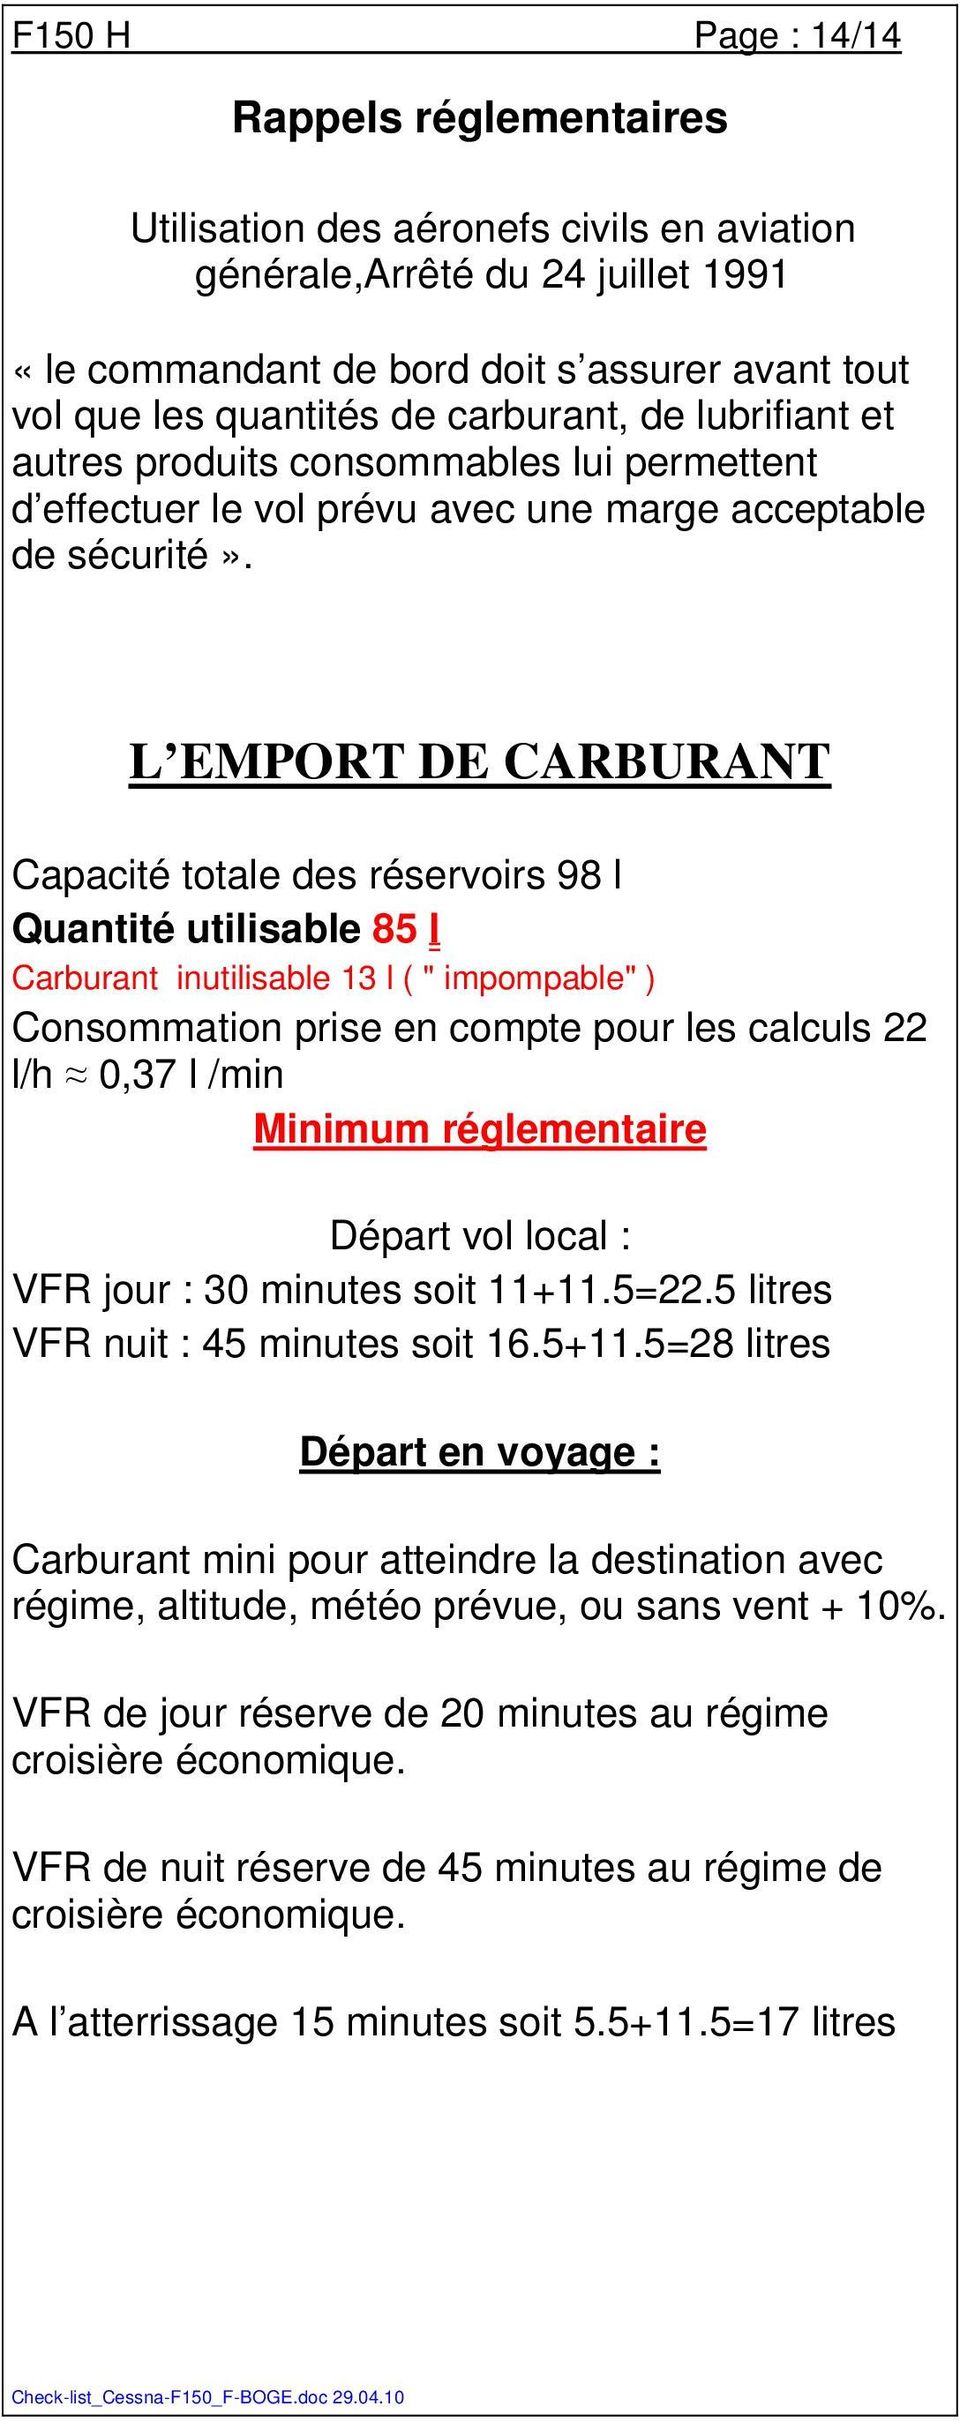 L EMPORT DE CARBURANT Capacité totale des réservoirs 98 l Quantité utilisable 85 l Carburant inutilisable 13 l ( " impompable" ) Consommation prise en compte pour les calculs 22 l/h 0,37 l /min